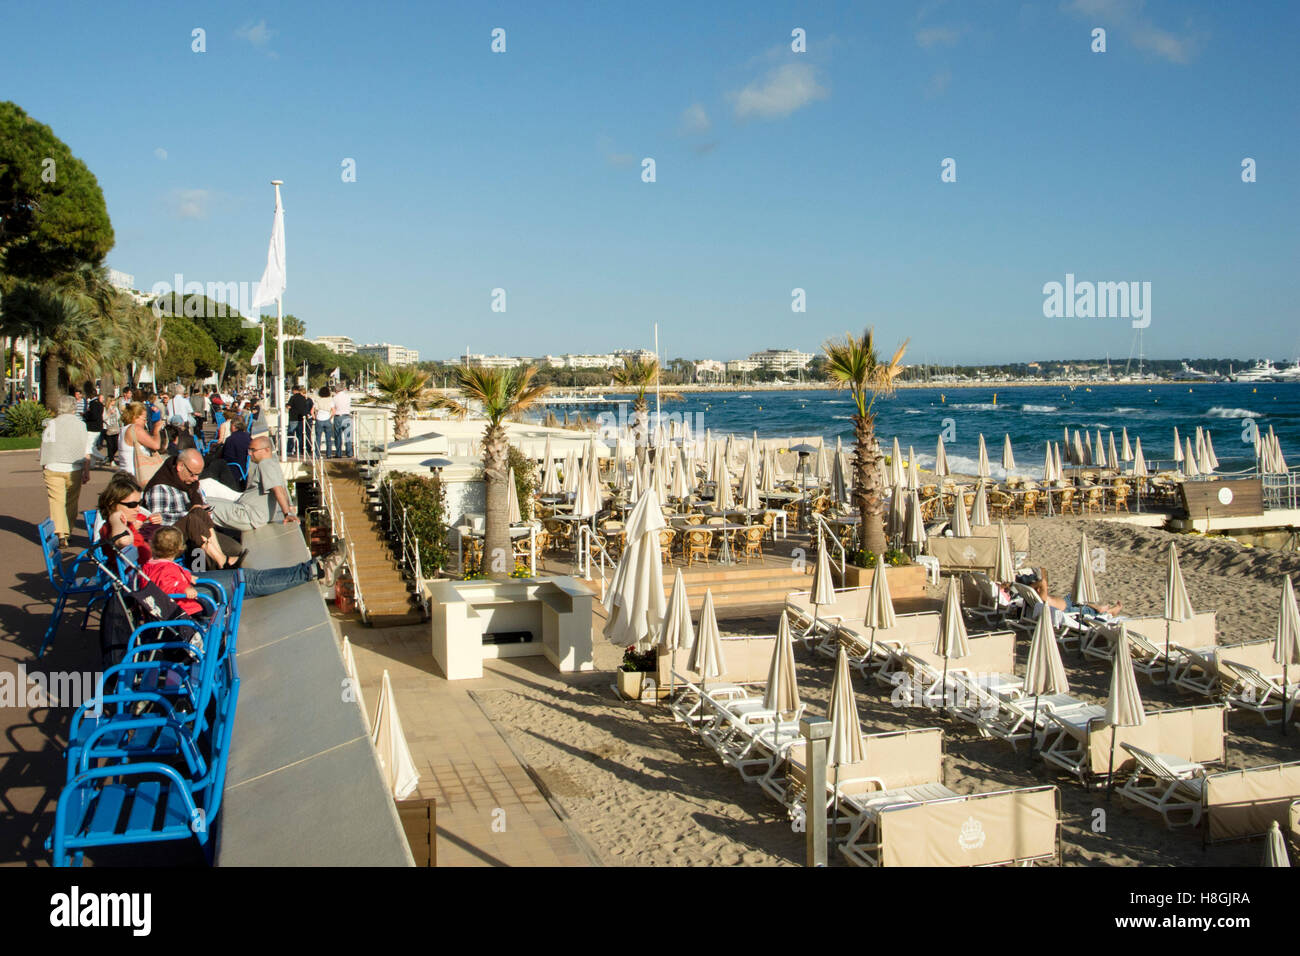 Frankreich, Cote d Azur, Cannes, Boulevard de la Croisette Flaniermeile und Stadtstrand Banque D'Images